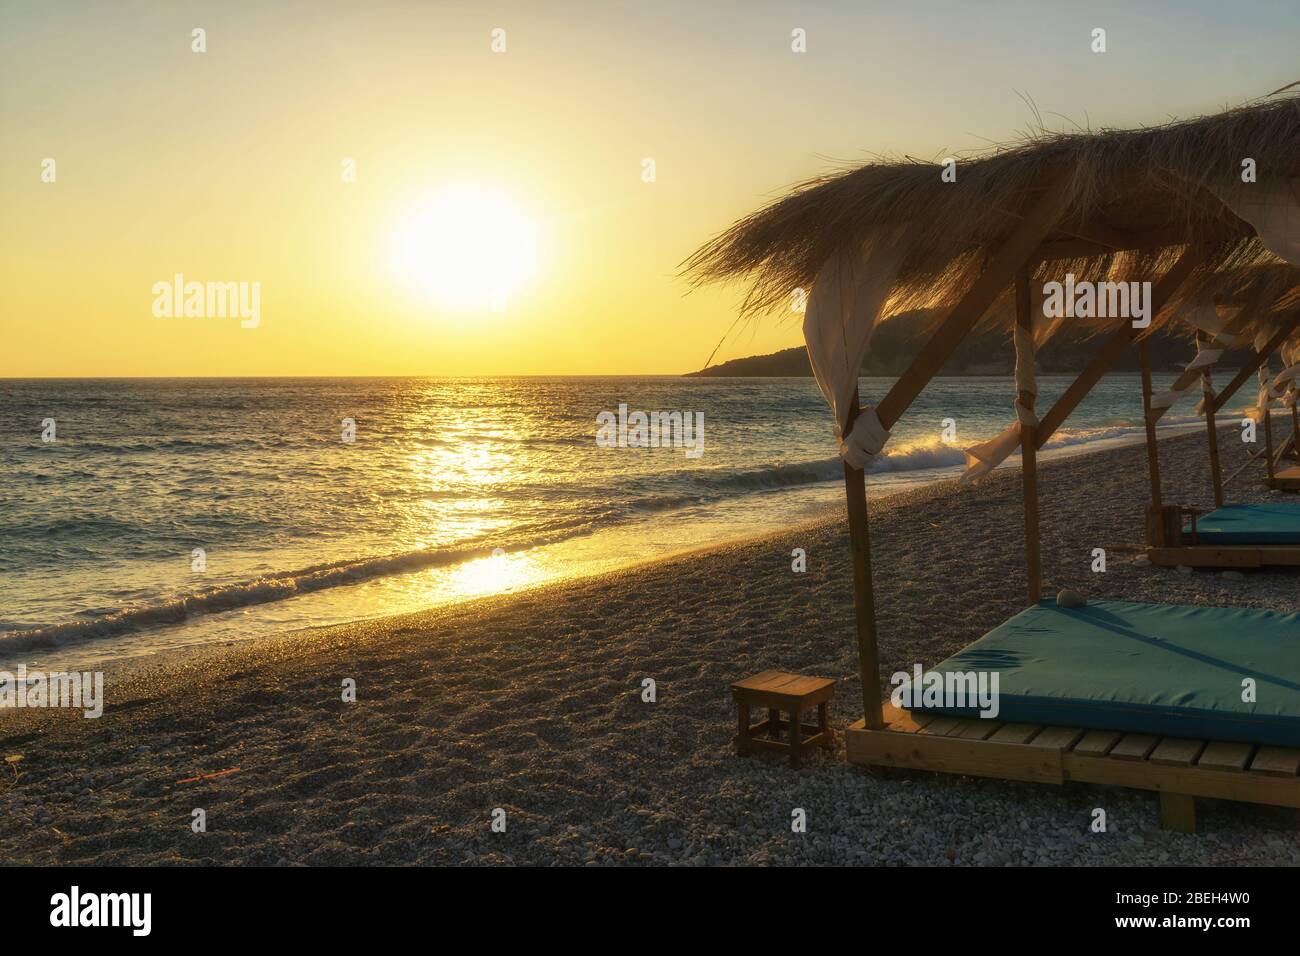 Sonnenuntergang am Strand Livadi bei Himare, Albanien, Europa. Strandhaus mit Sonnenliegen am Strand Ionische Küste. Stockfoto